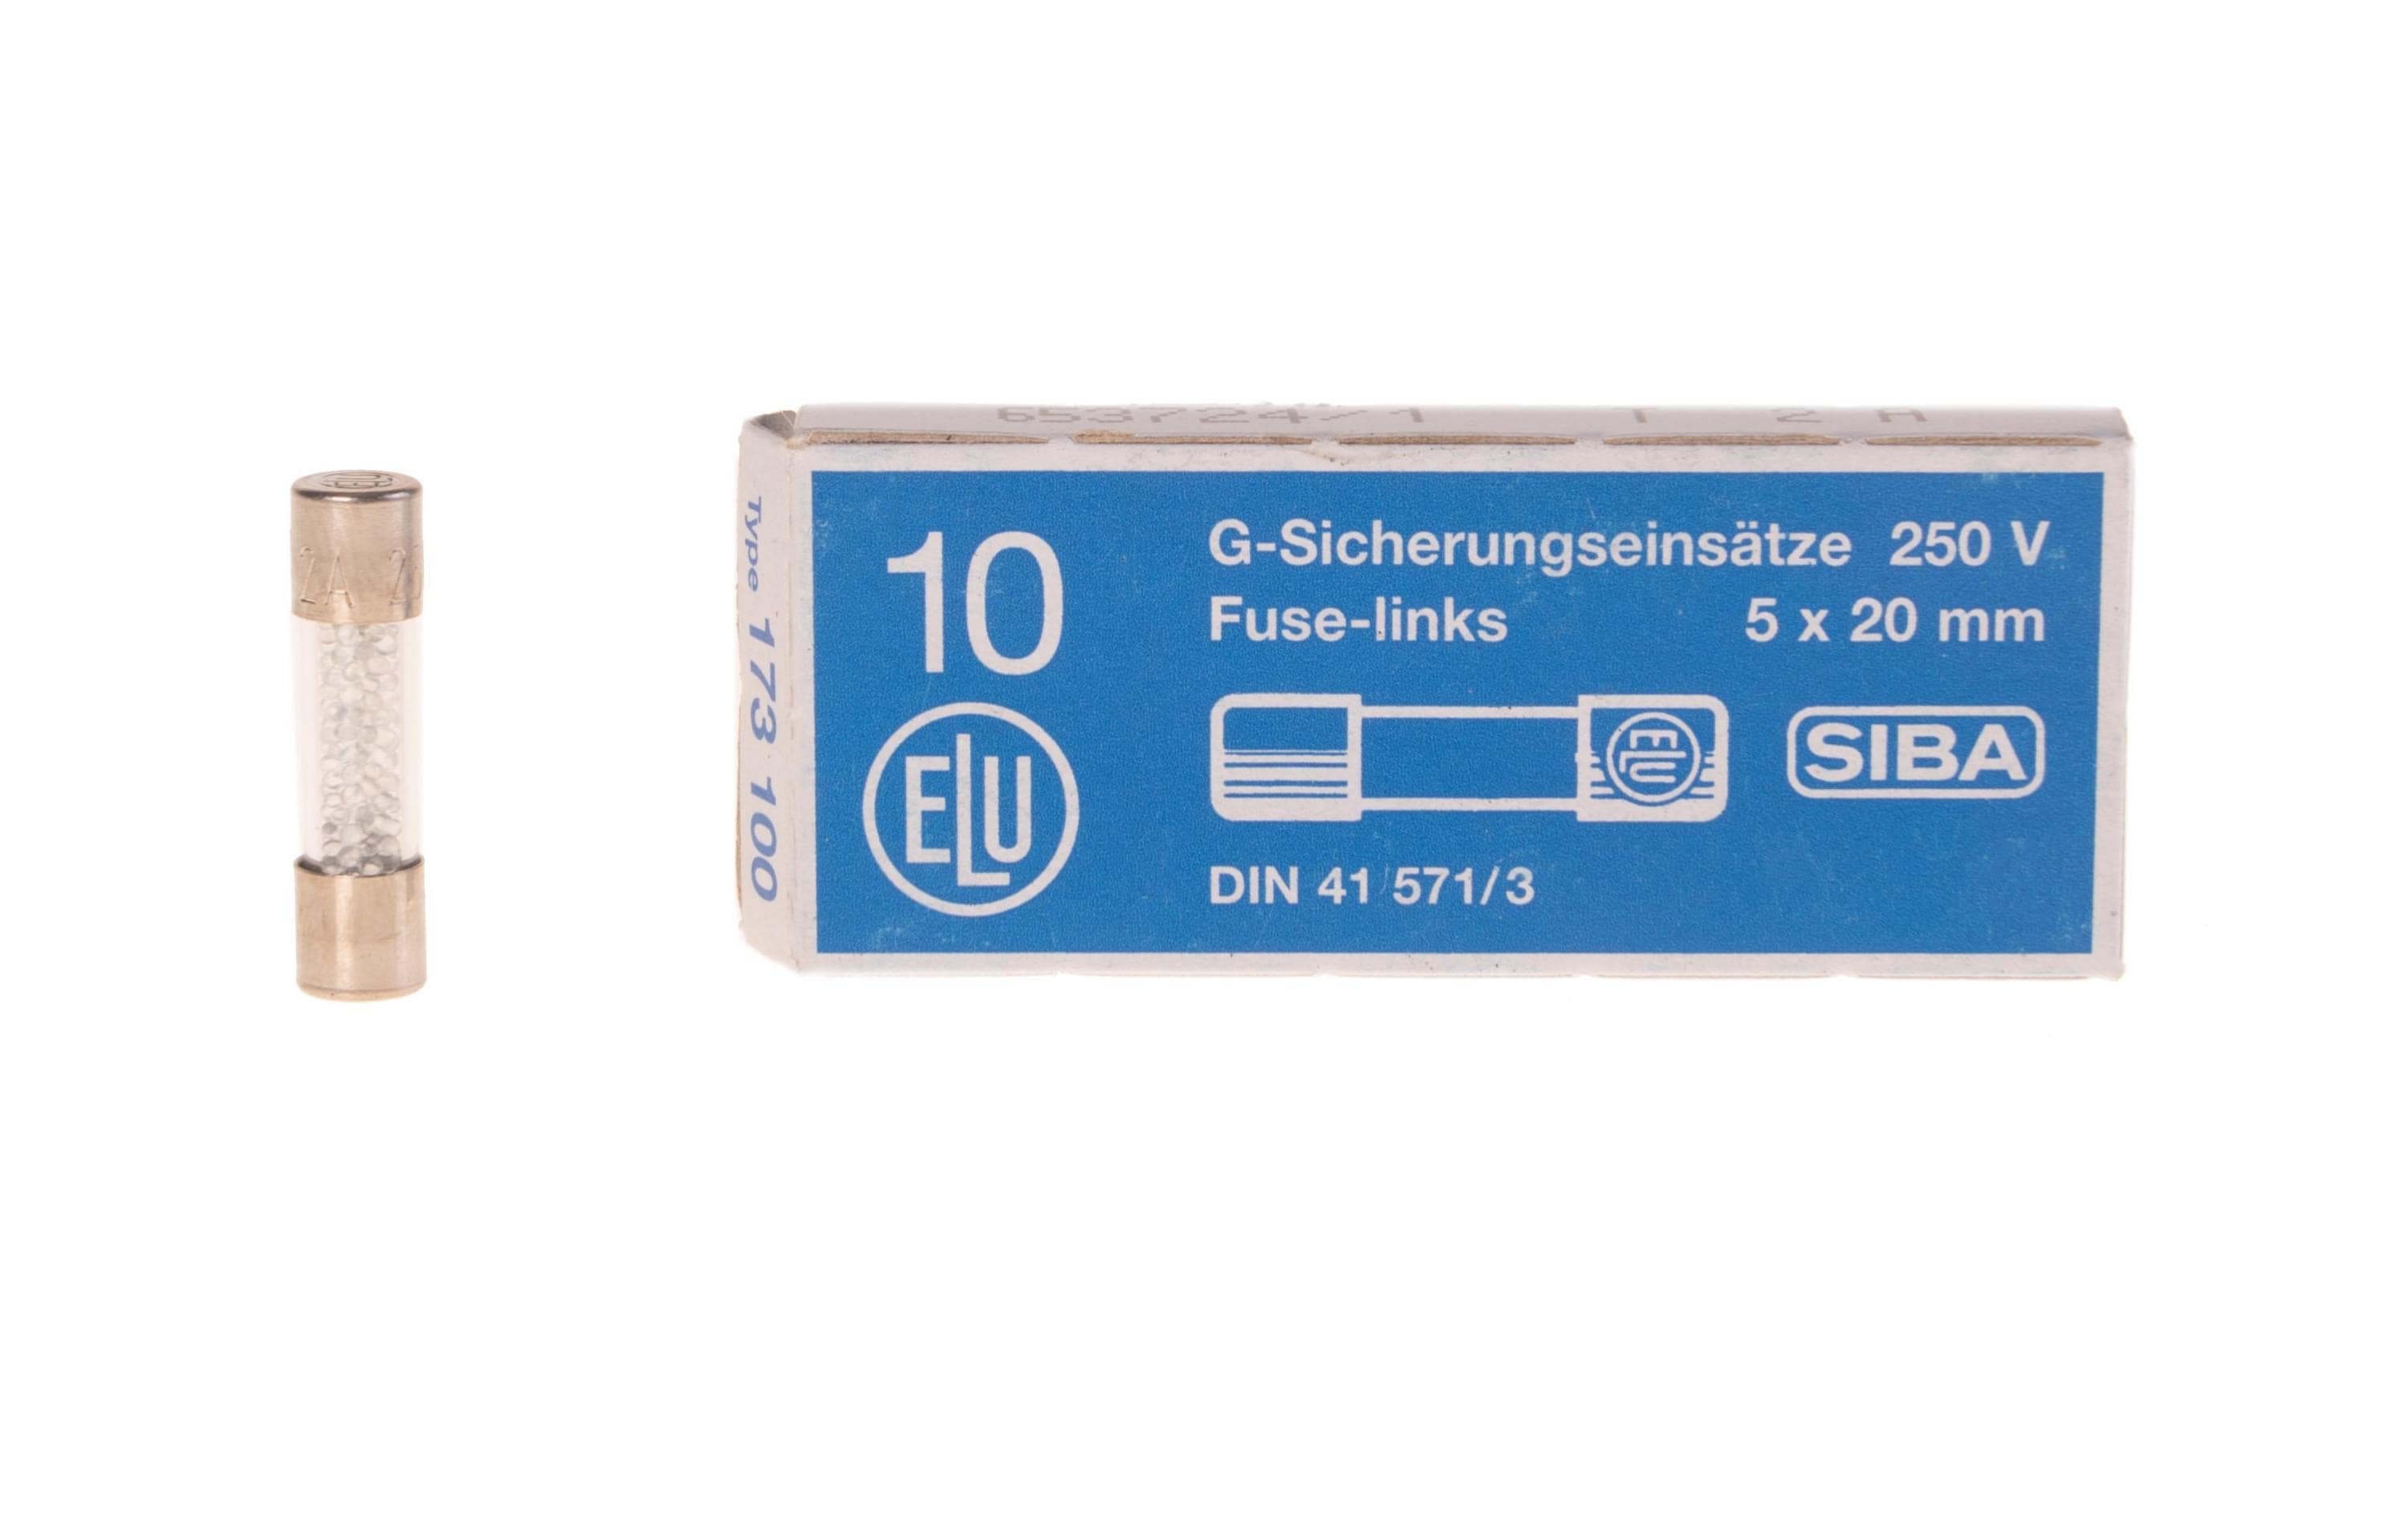 Elektromaterial Schmelzsicherung ESKA 5 x 20 FST 2A